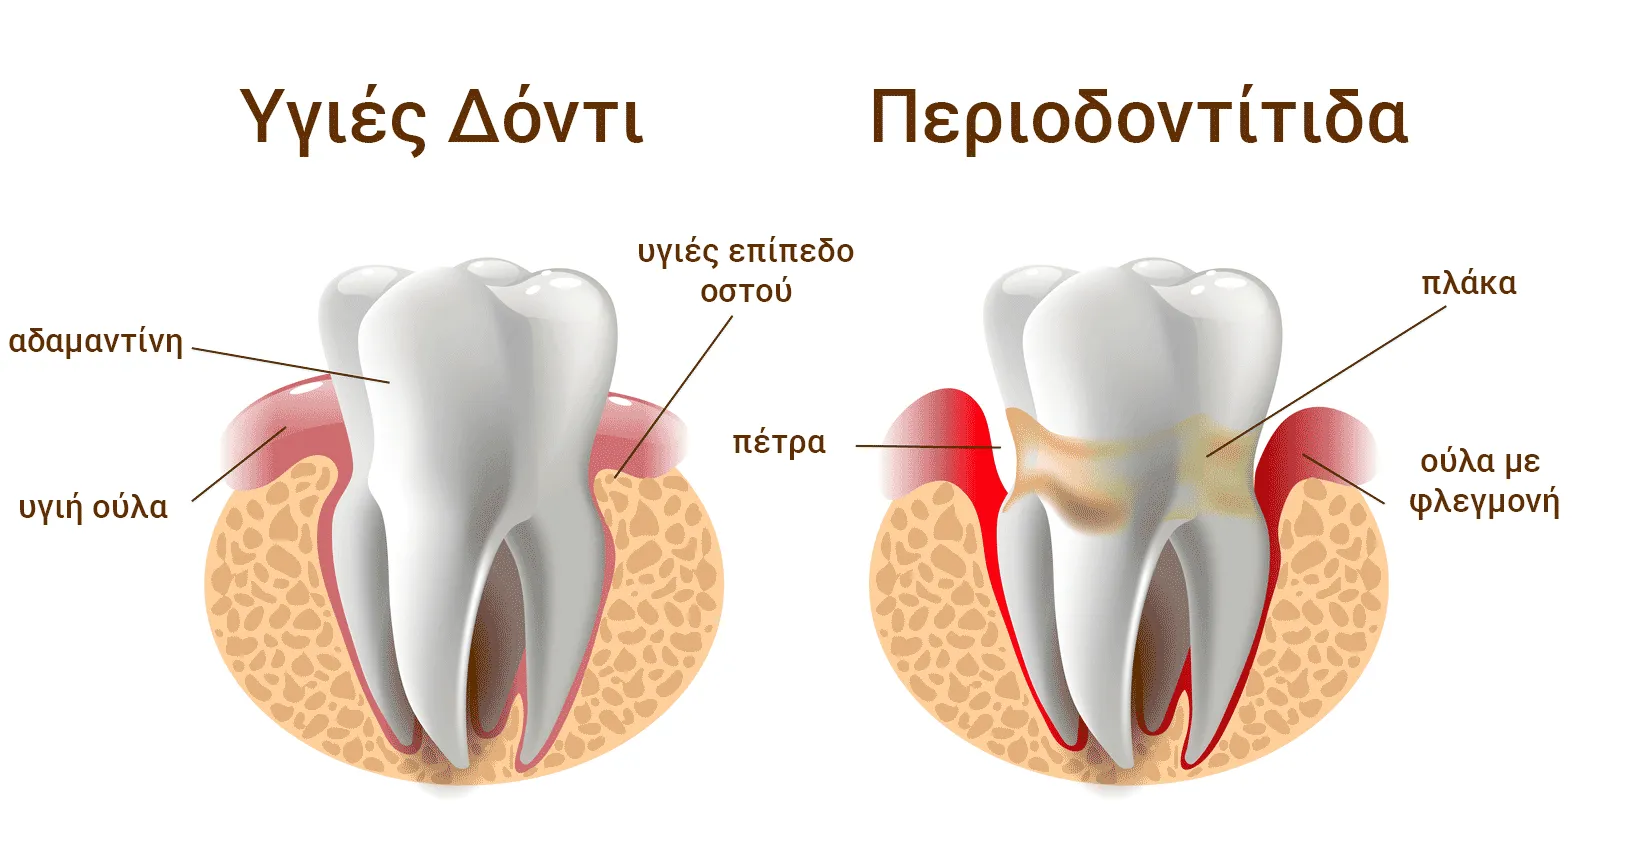 υγιές δόντι και περιοδοντίτιδα